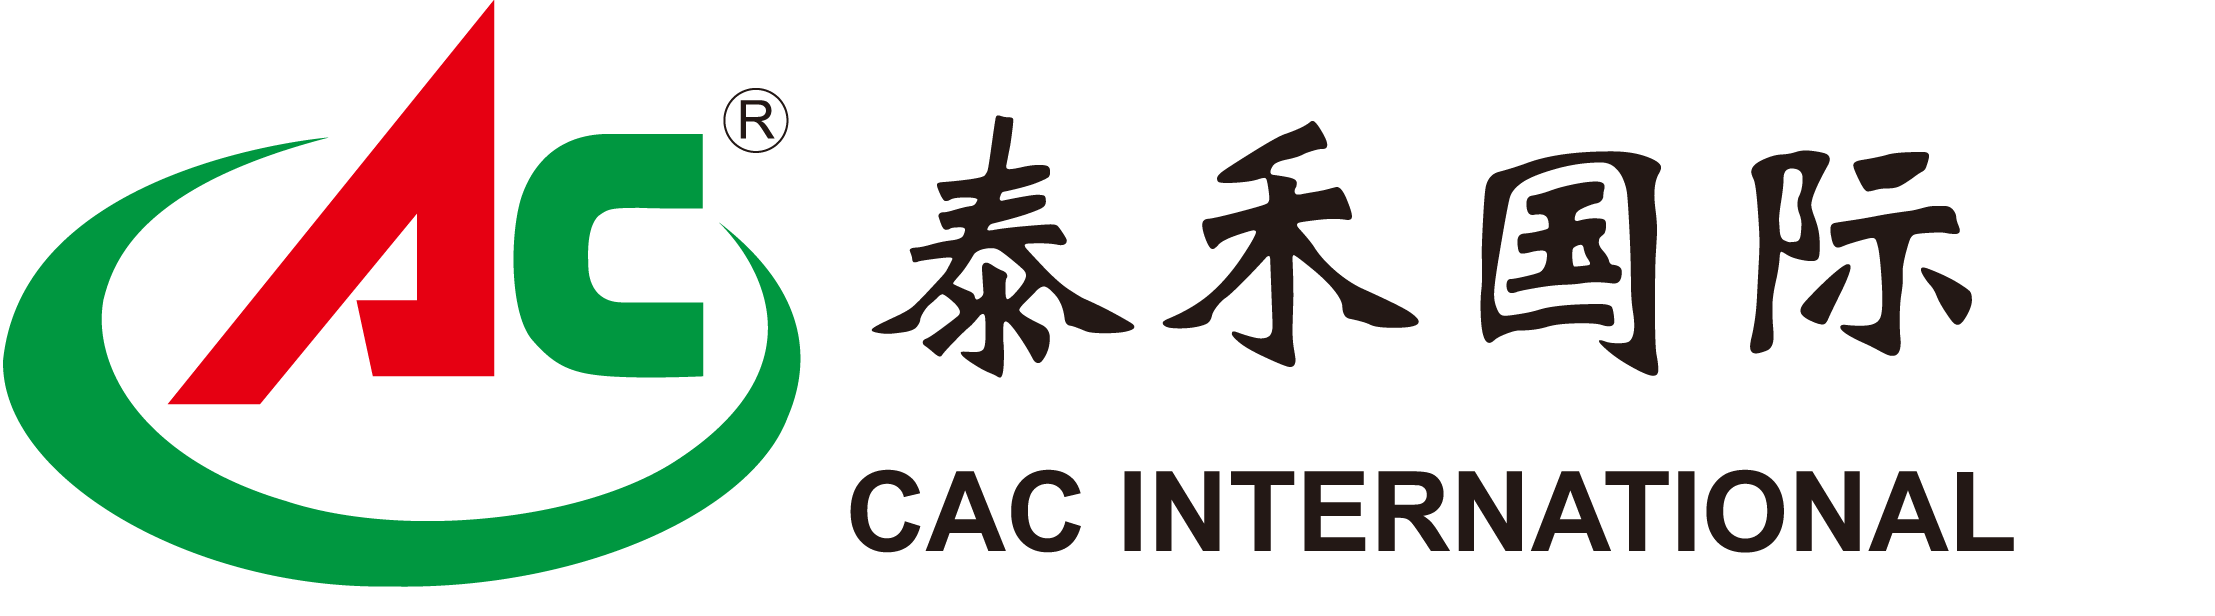 contenido de las noticias-CAC noticias -威斯澳门尼斯人娱乐